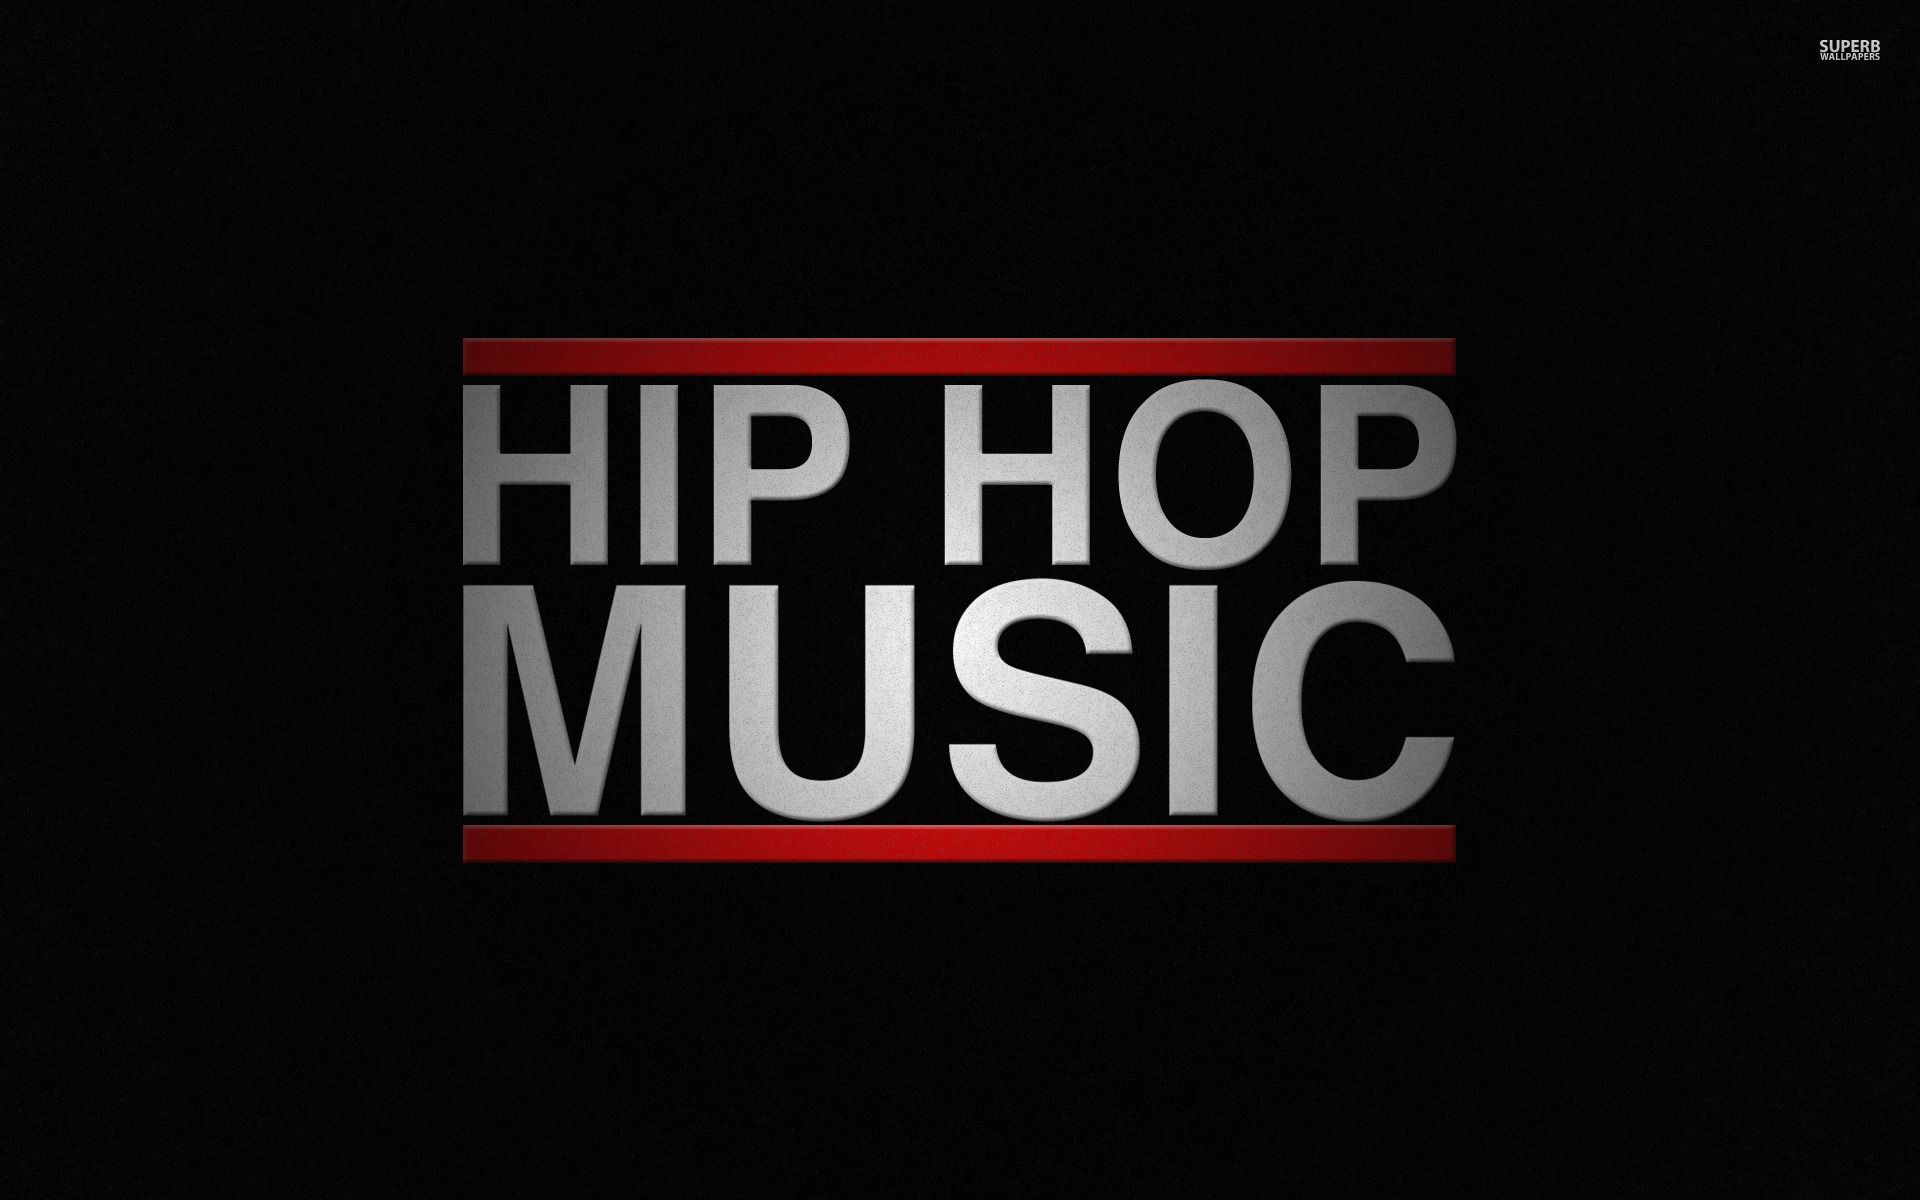 Hip Hop music wallpaper - Music wallpapers - #29517